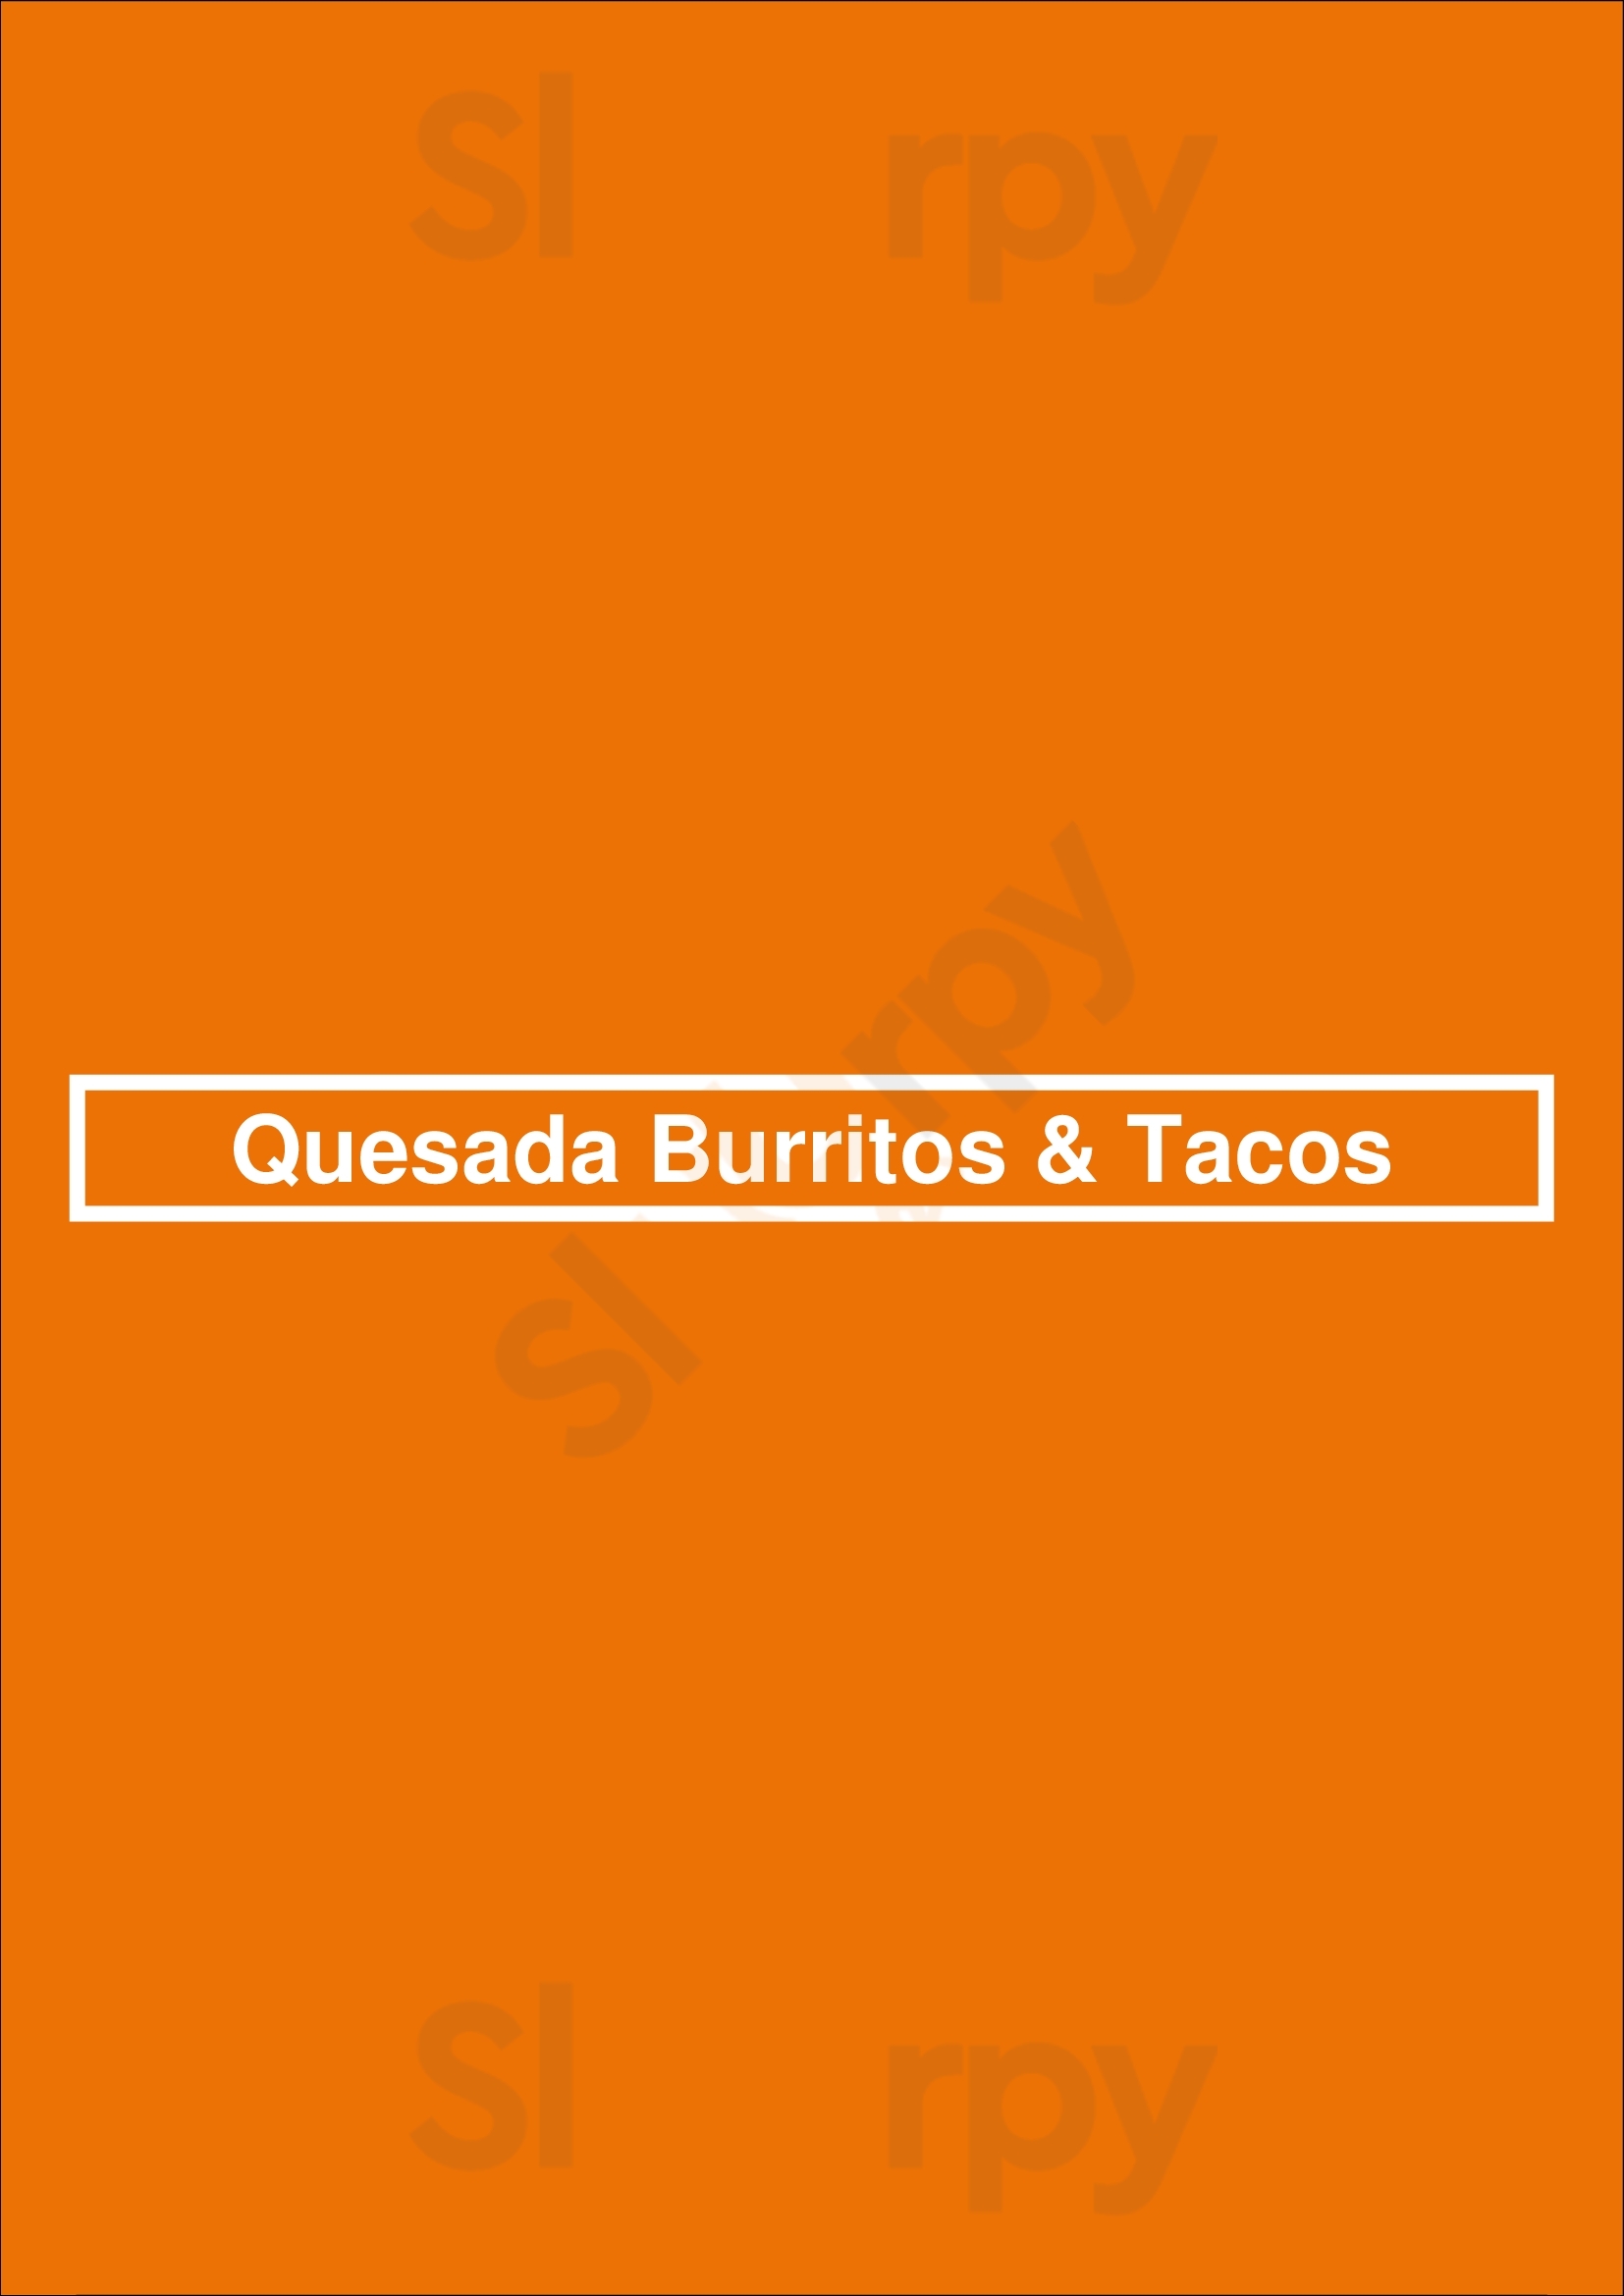 Quesada Burritos & Tacos Cambridge Menu - 1